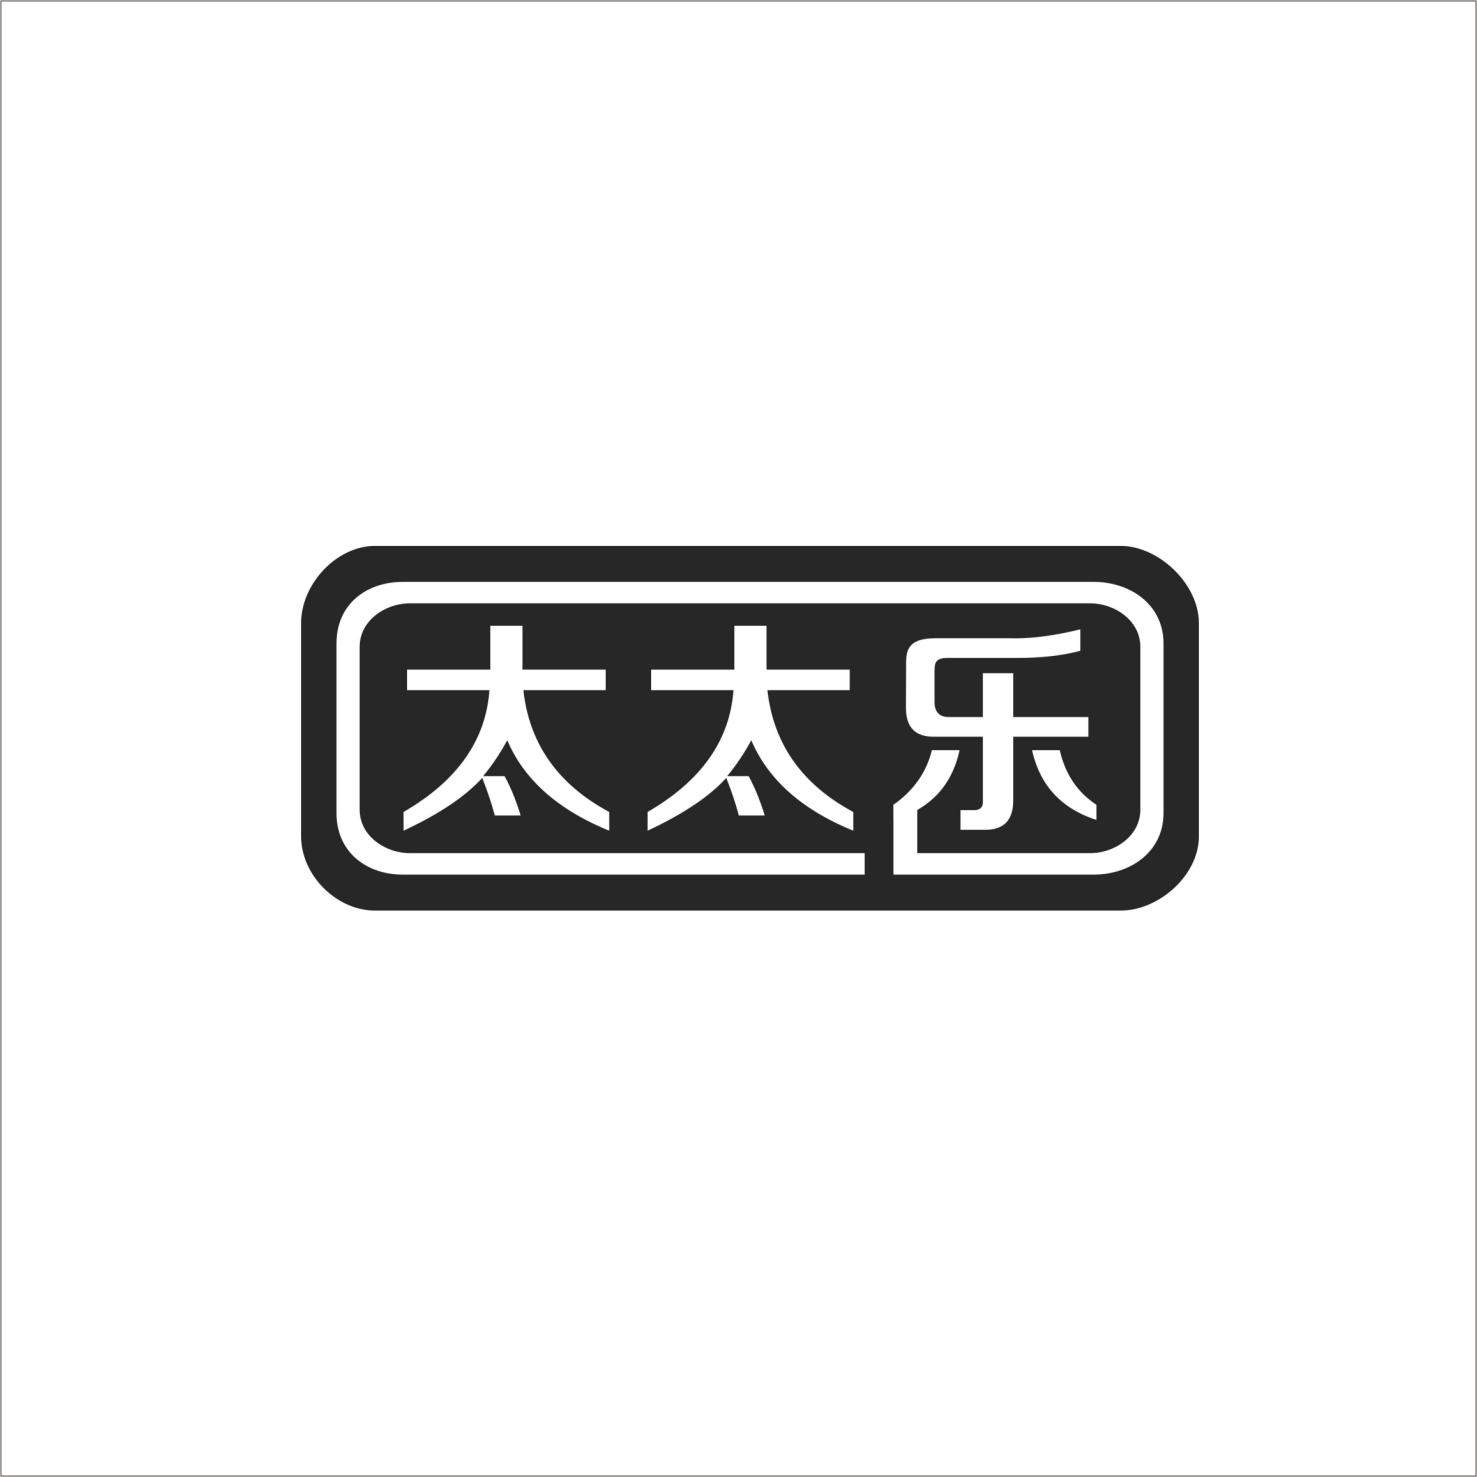 商标文字太太乐商标注册号 24774233,商标申请人广东康祥实业股份有限